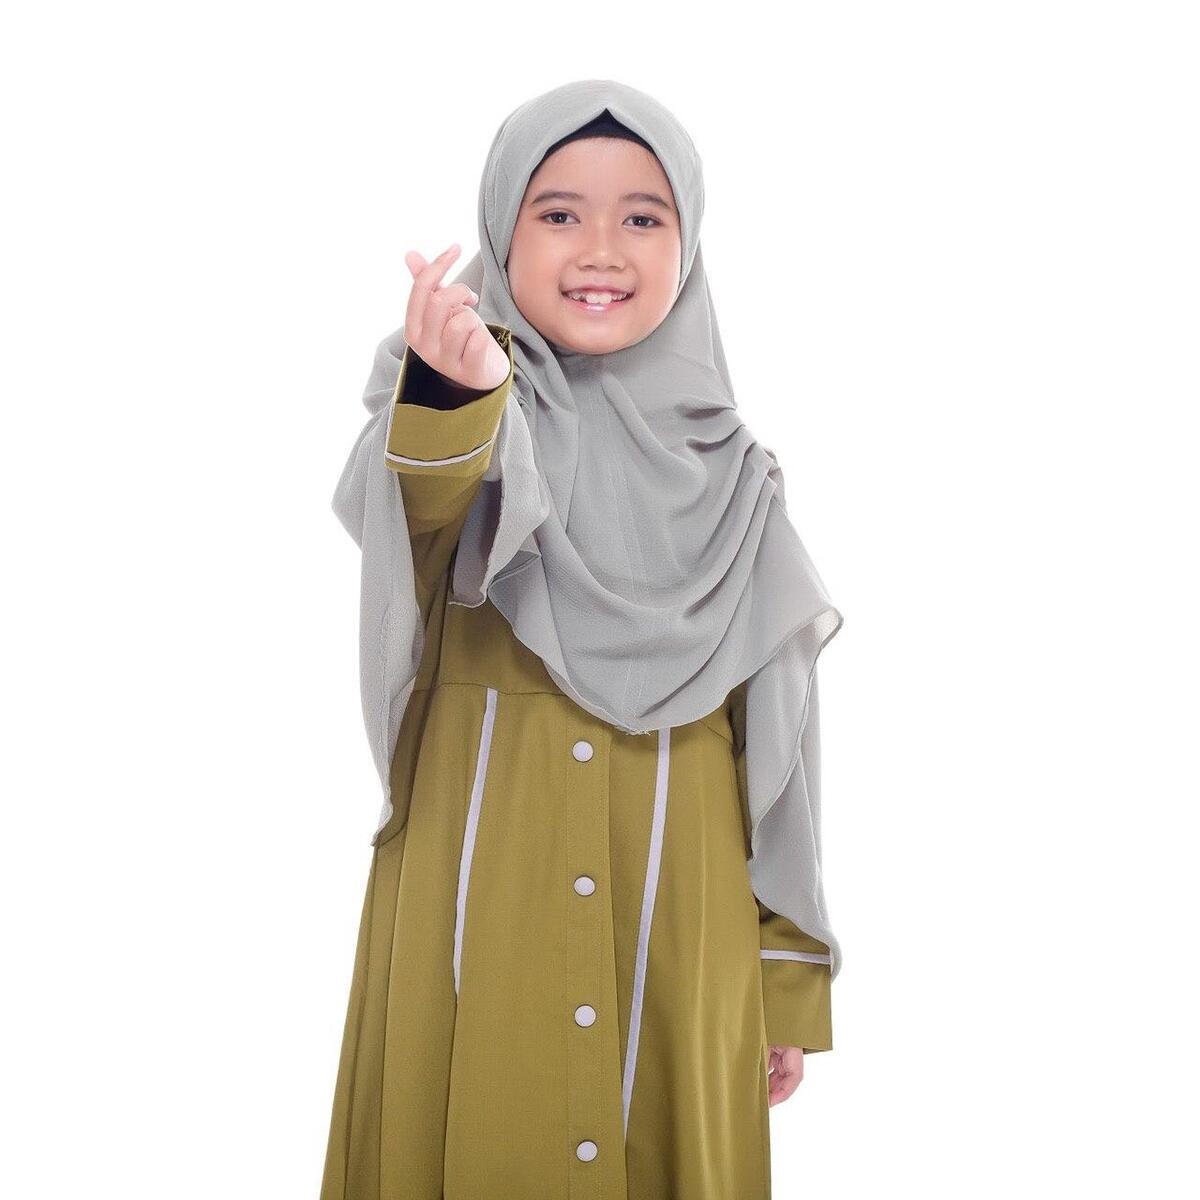 楽天J-NOCHI 楽天市場店ヒジャブHana Kids Hijab Instant Kids Veil School Hijab Crepe Fabric 8-12 yo ヒジャブ キッズ ジュニア 女の子 女子 子ども こども 子供 ピンク 白 ホワイト ブラック 黒 オレンジ おしゃれ 可愛い かわいい 礼拝 服